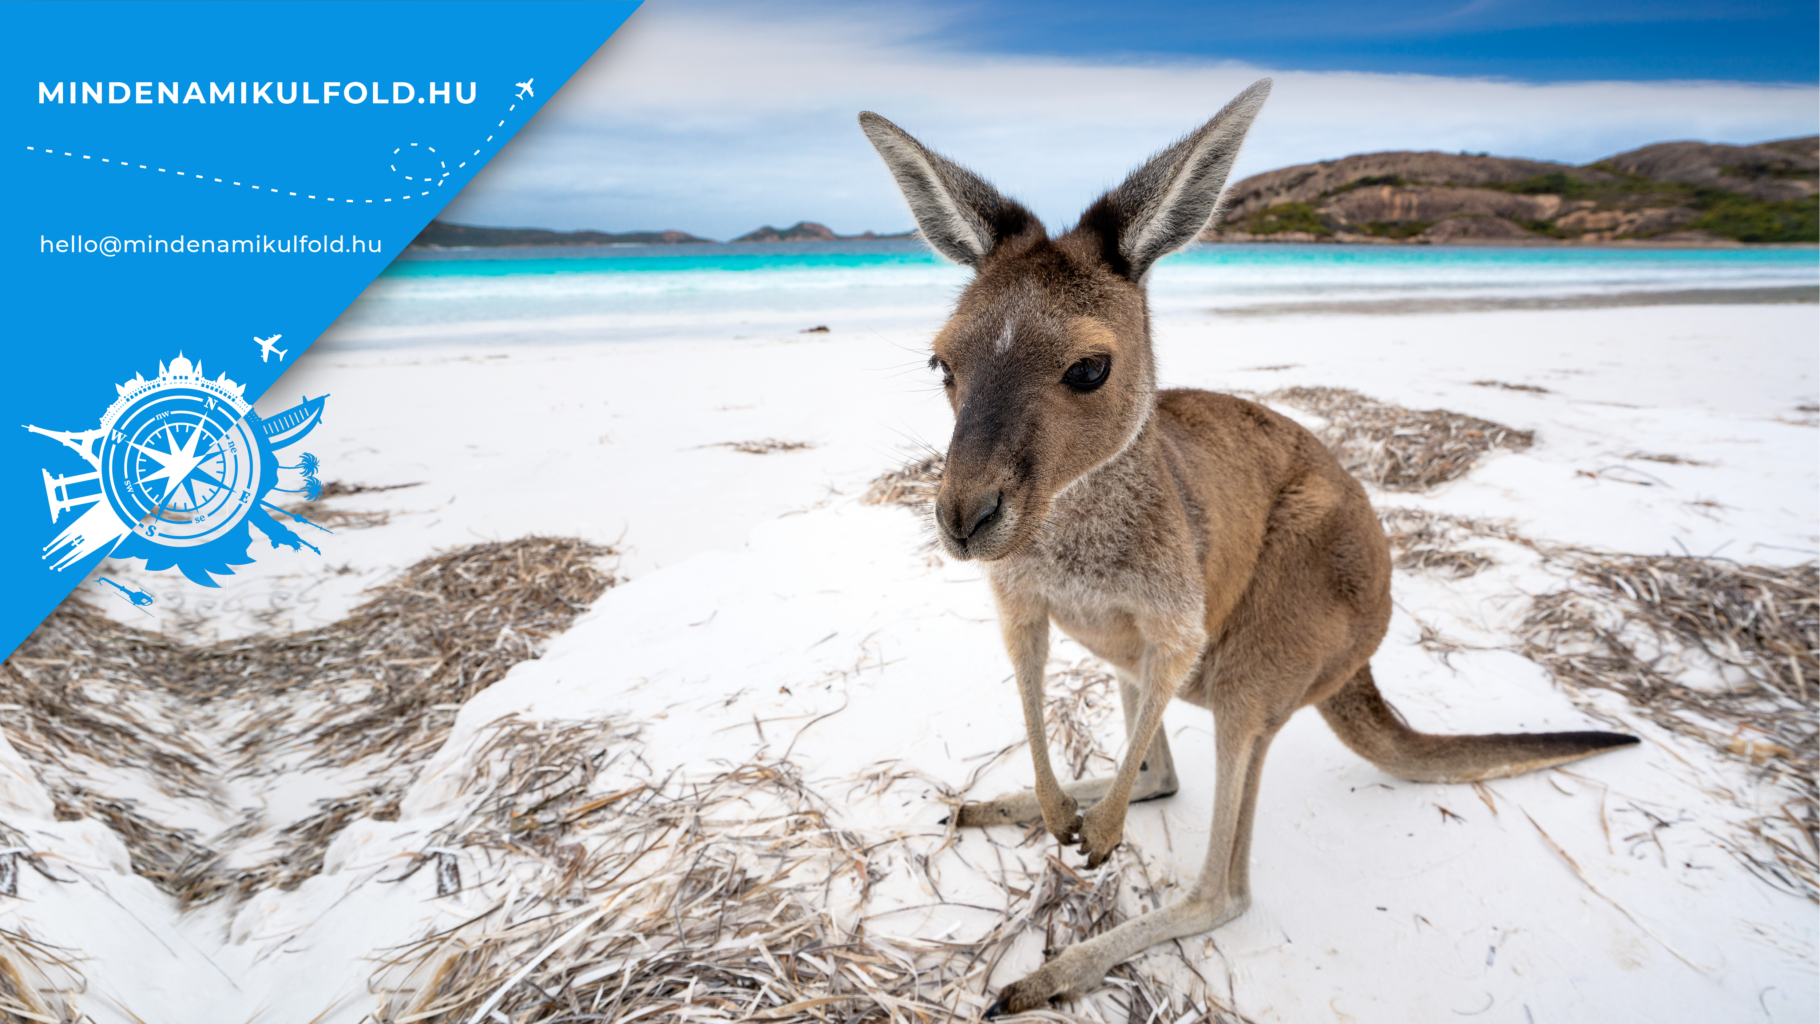 Ausztráliába utaznál? Csodás ország, ahol nagyon különleges állatokkal találkozhatsz, amik csak ITT ŐSHONOSAK>>>